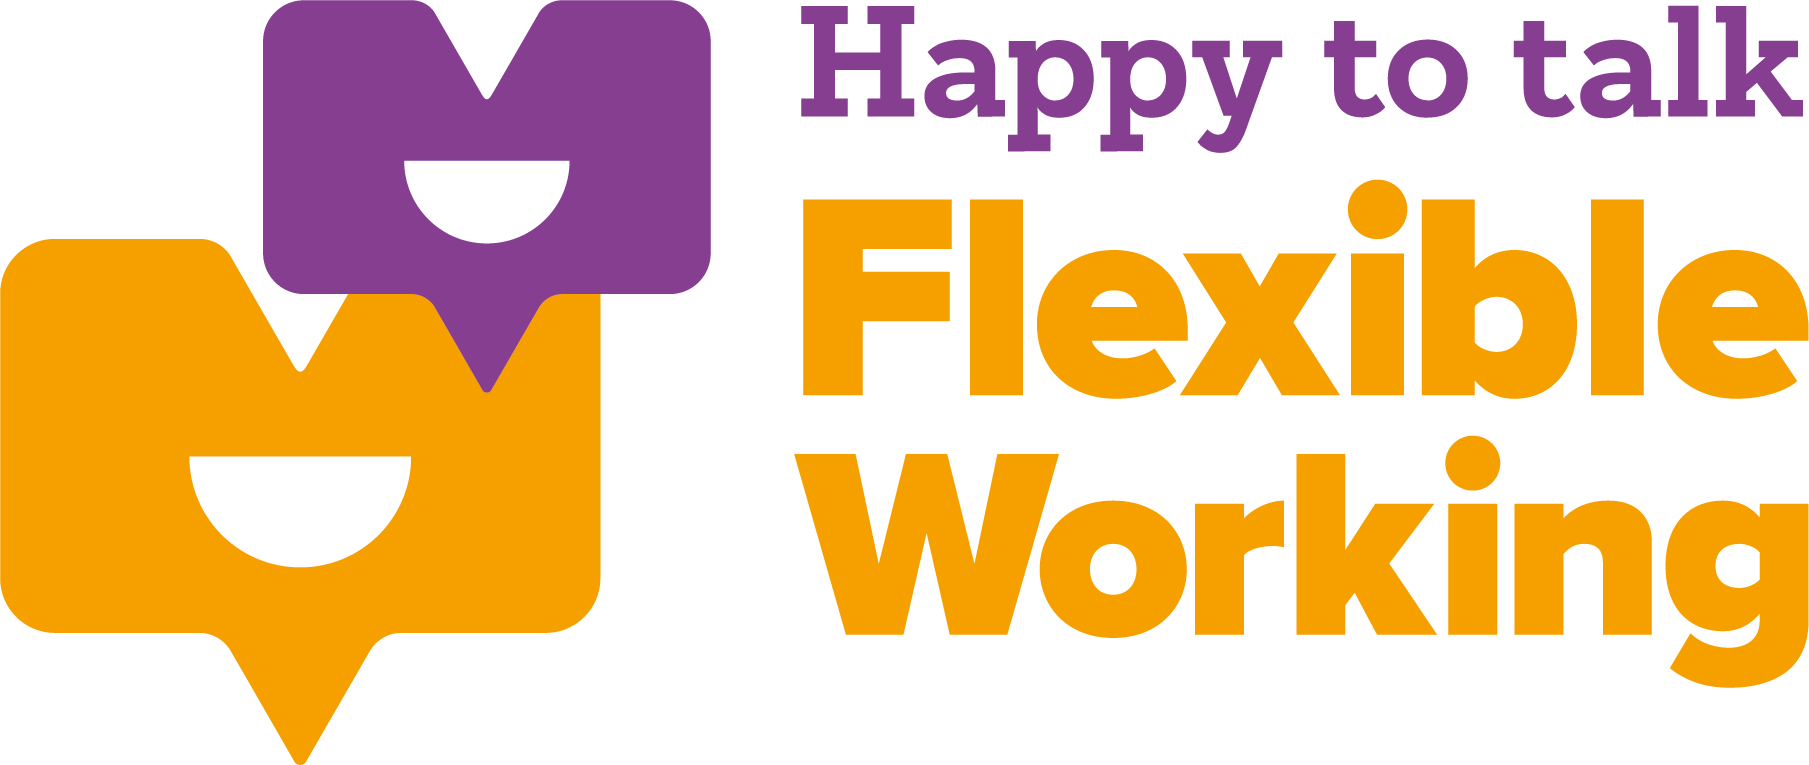 WF-Happy-to-talk-logo